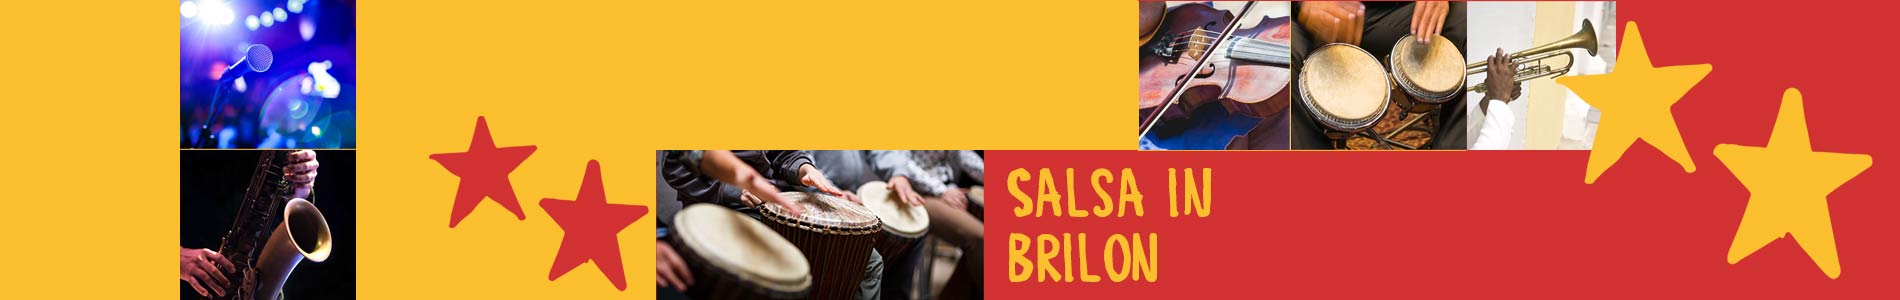 Salsa in Brilon – Salsa lernen und tanzen, Tanzkurse, Partys, Veranstaltungen